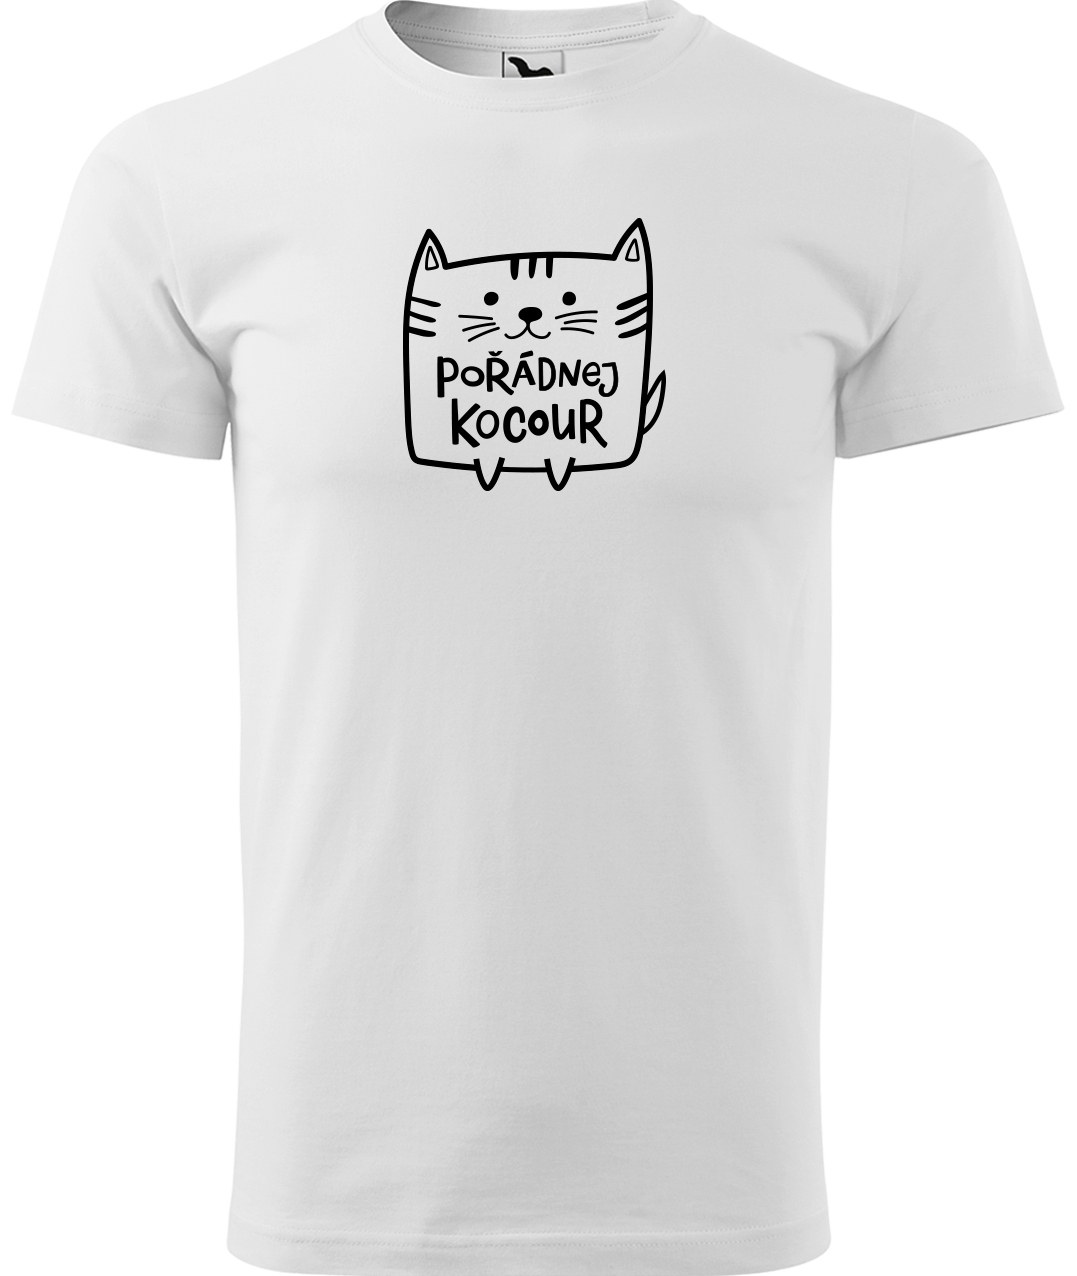 Pánské tričko s kočkou - Pořádnej kocour Velikost: 2XL, Barva: Bílá (00)